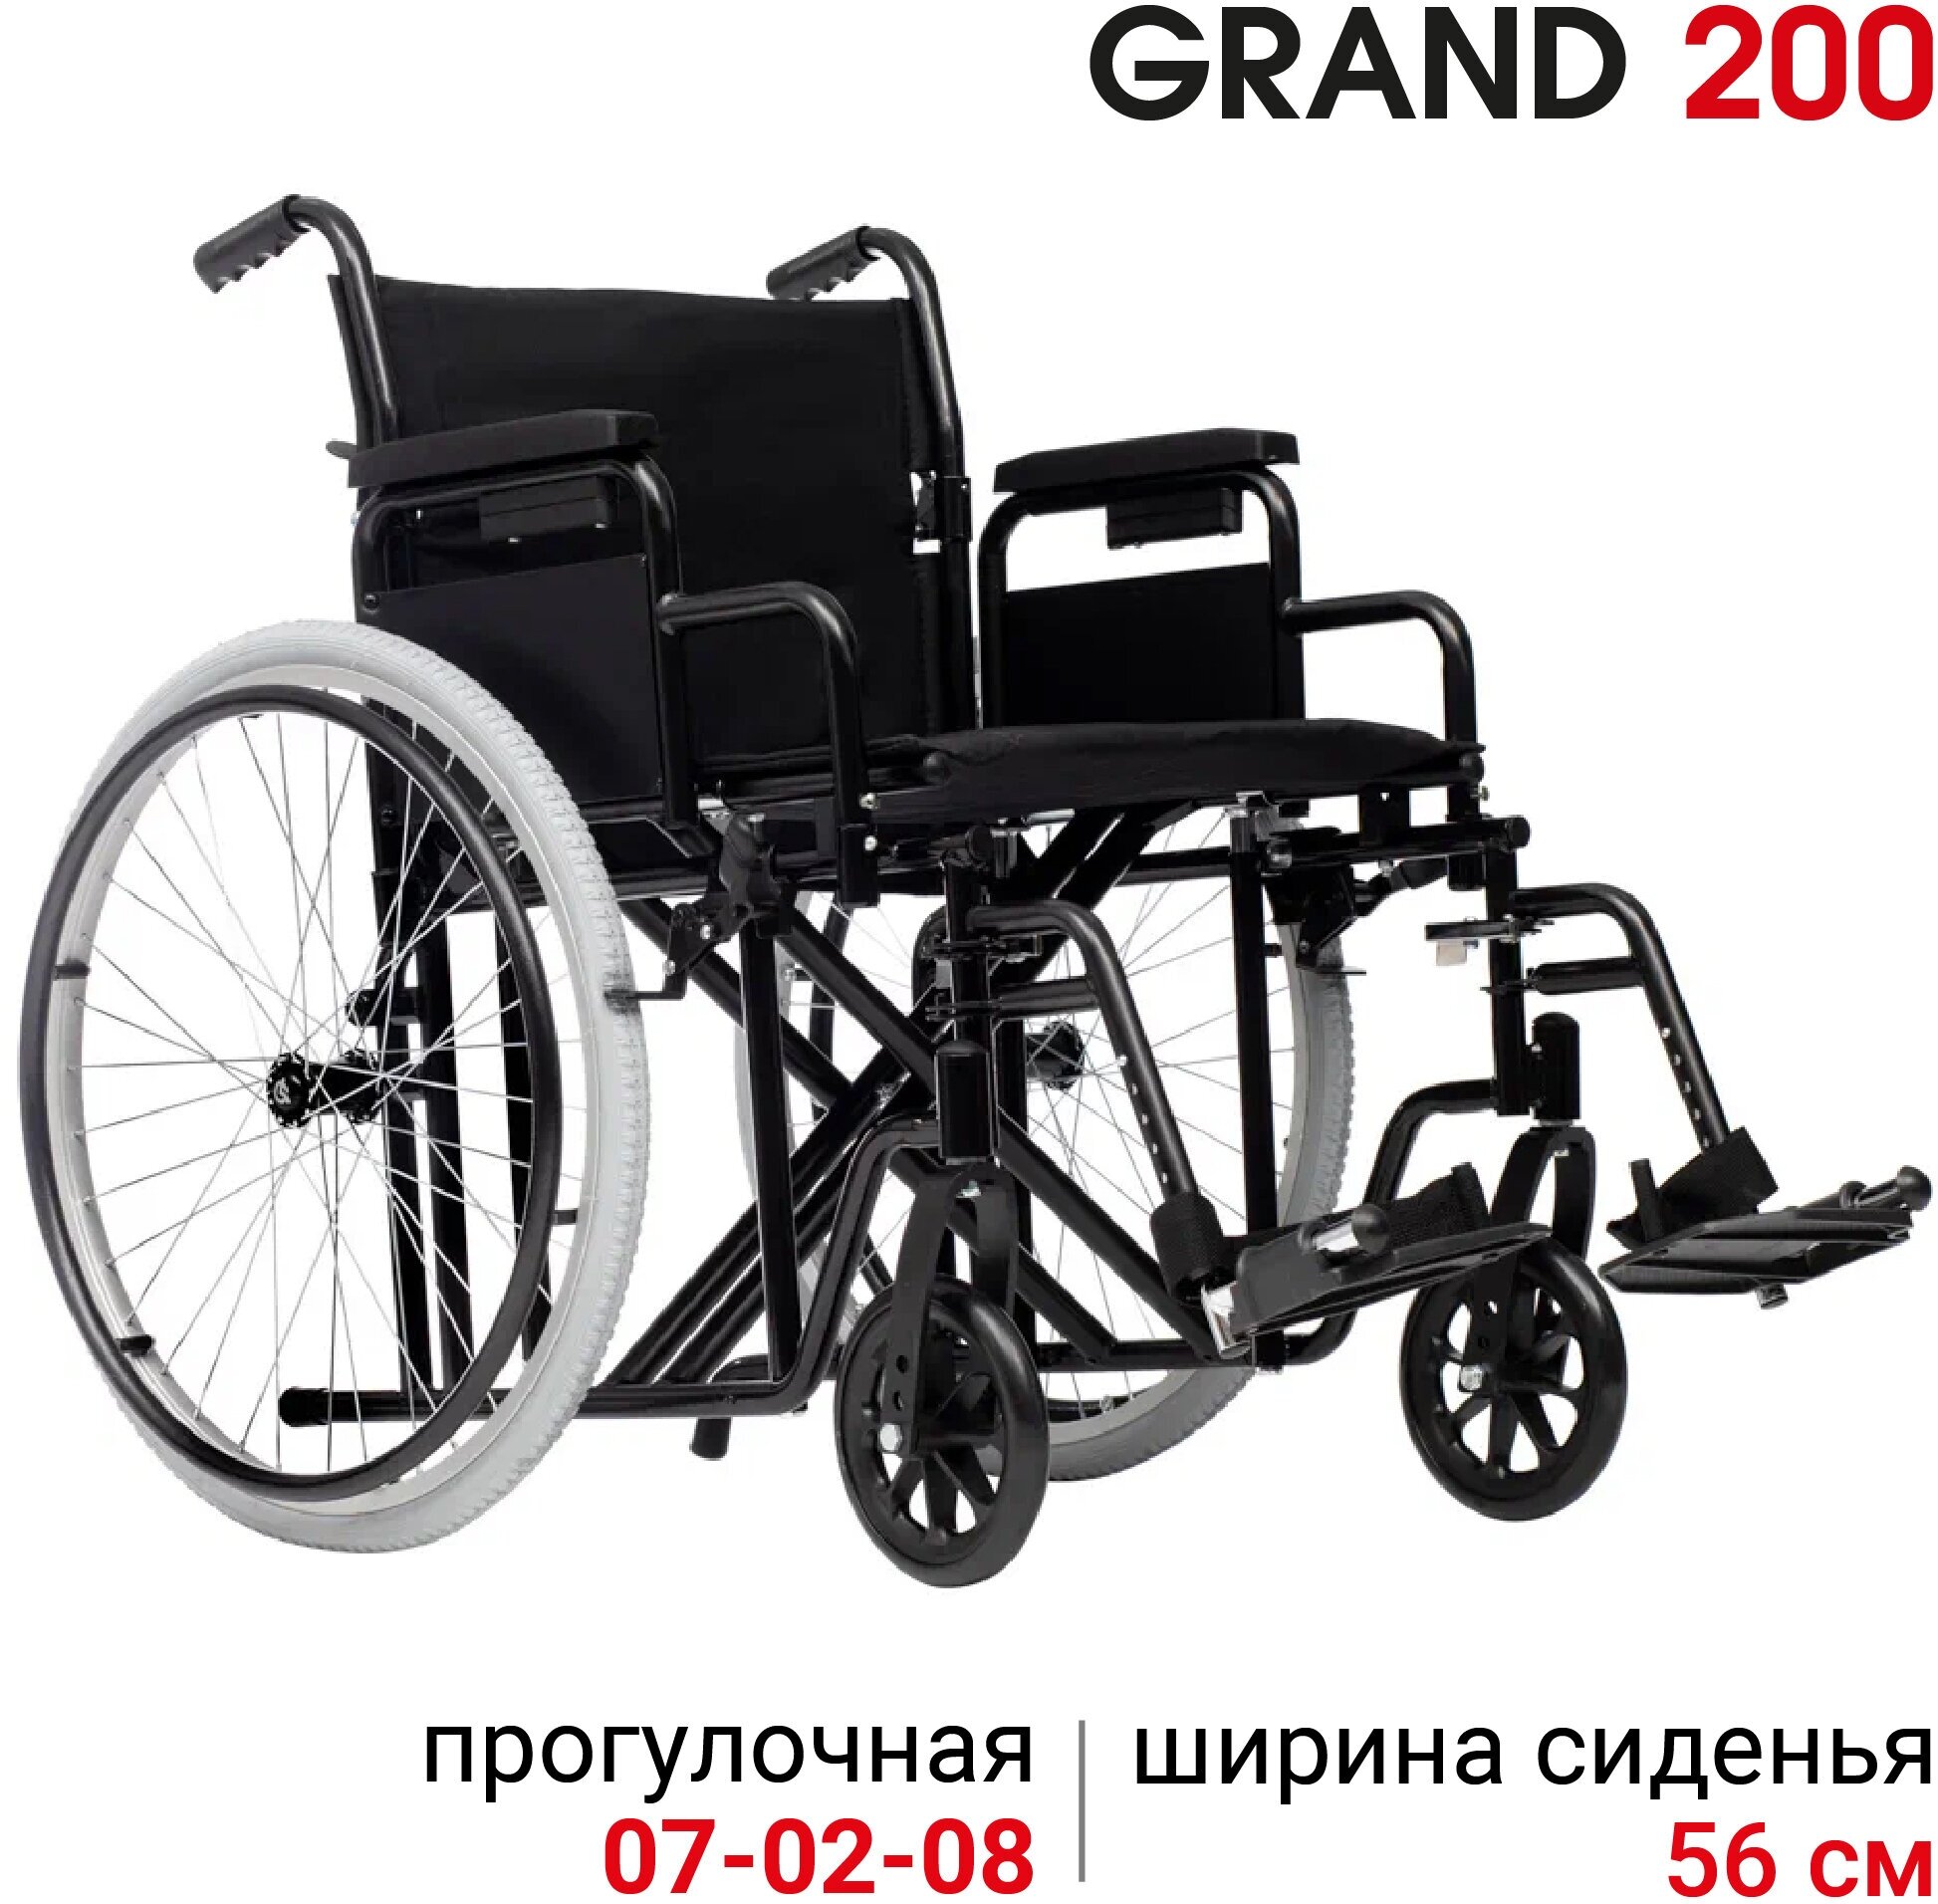 Кресло-коляска механическая повышенной грузоподъемности Ortonica Trend 25/Grand 200 ширина сиденья 56 см передние литые колеса задние пневматические